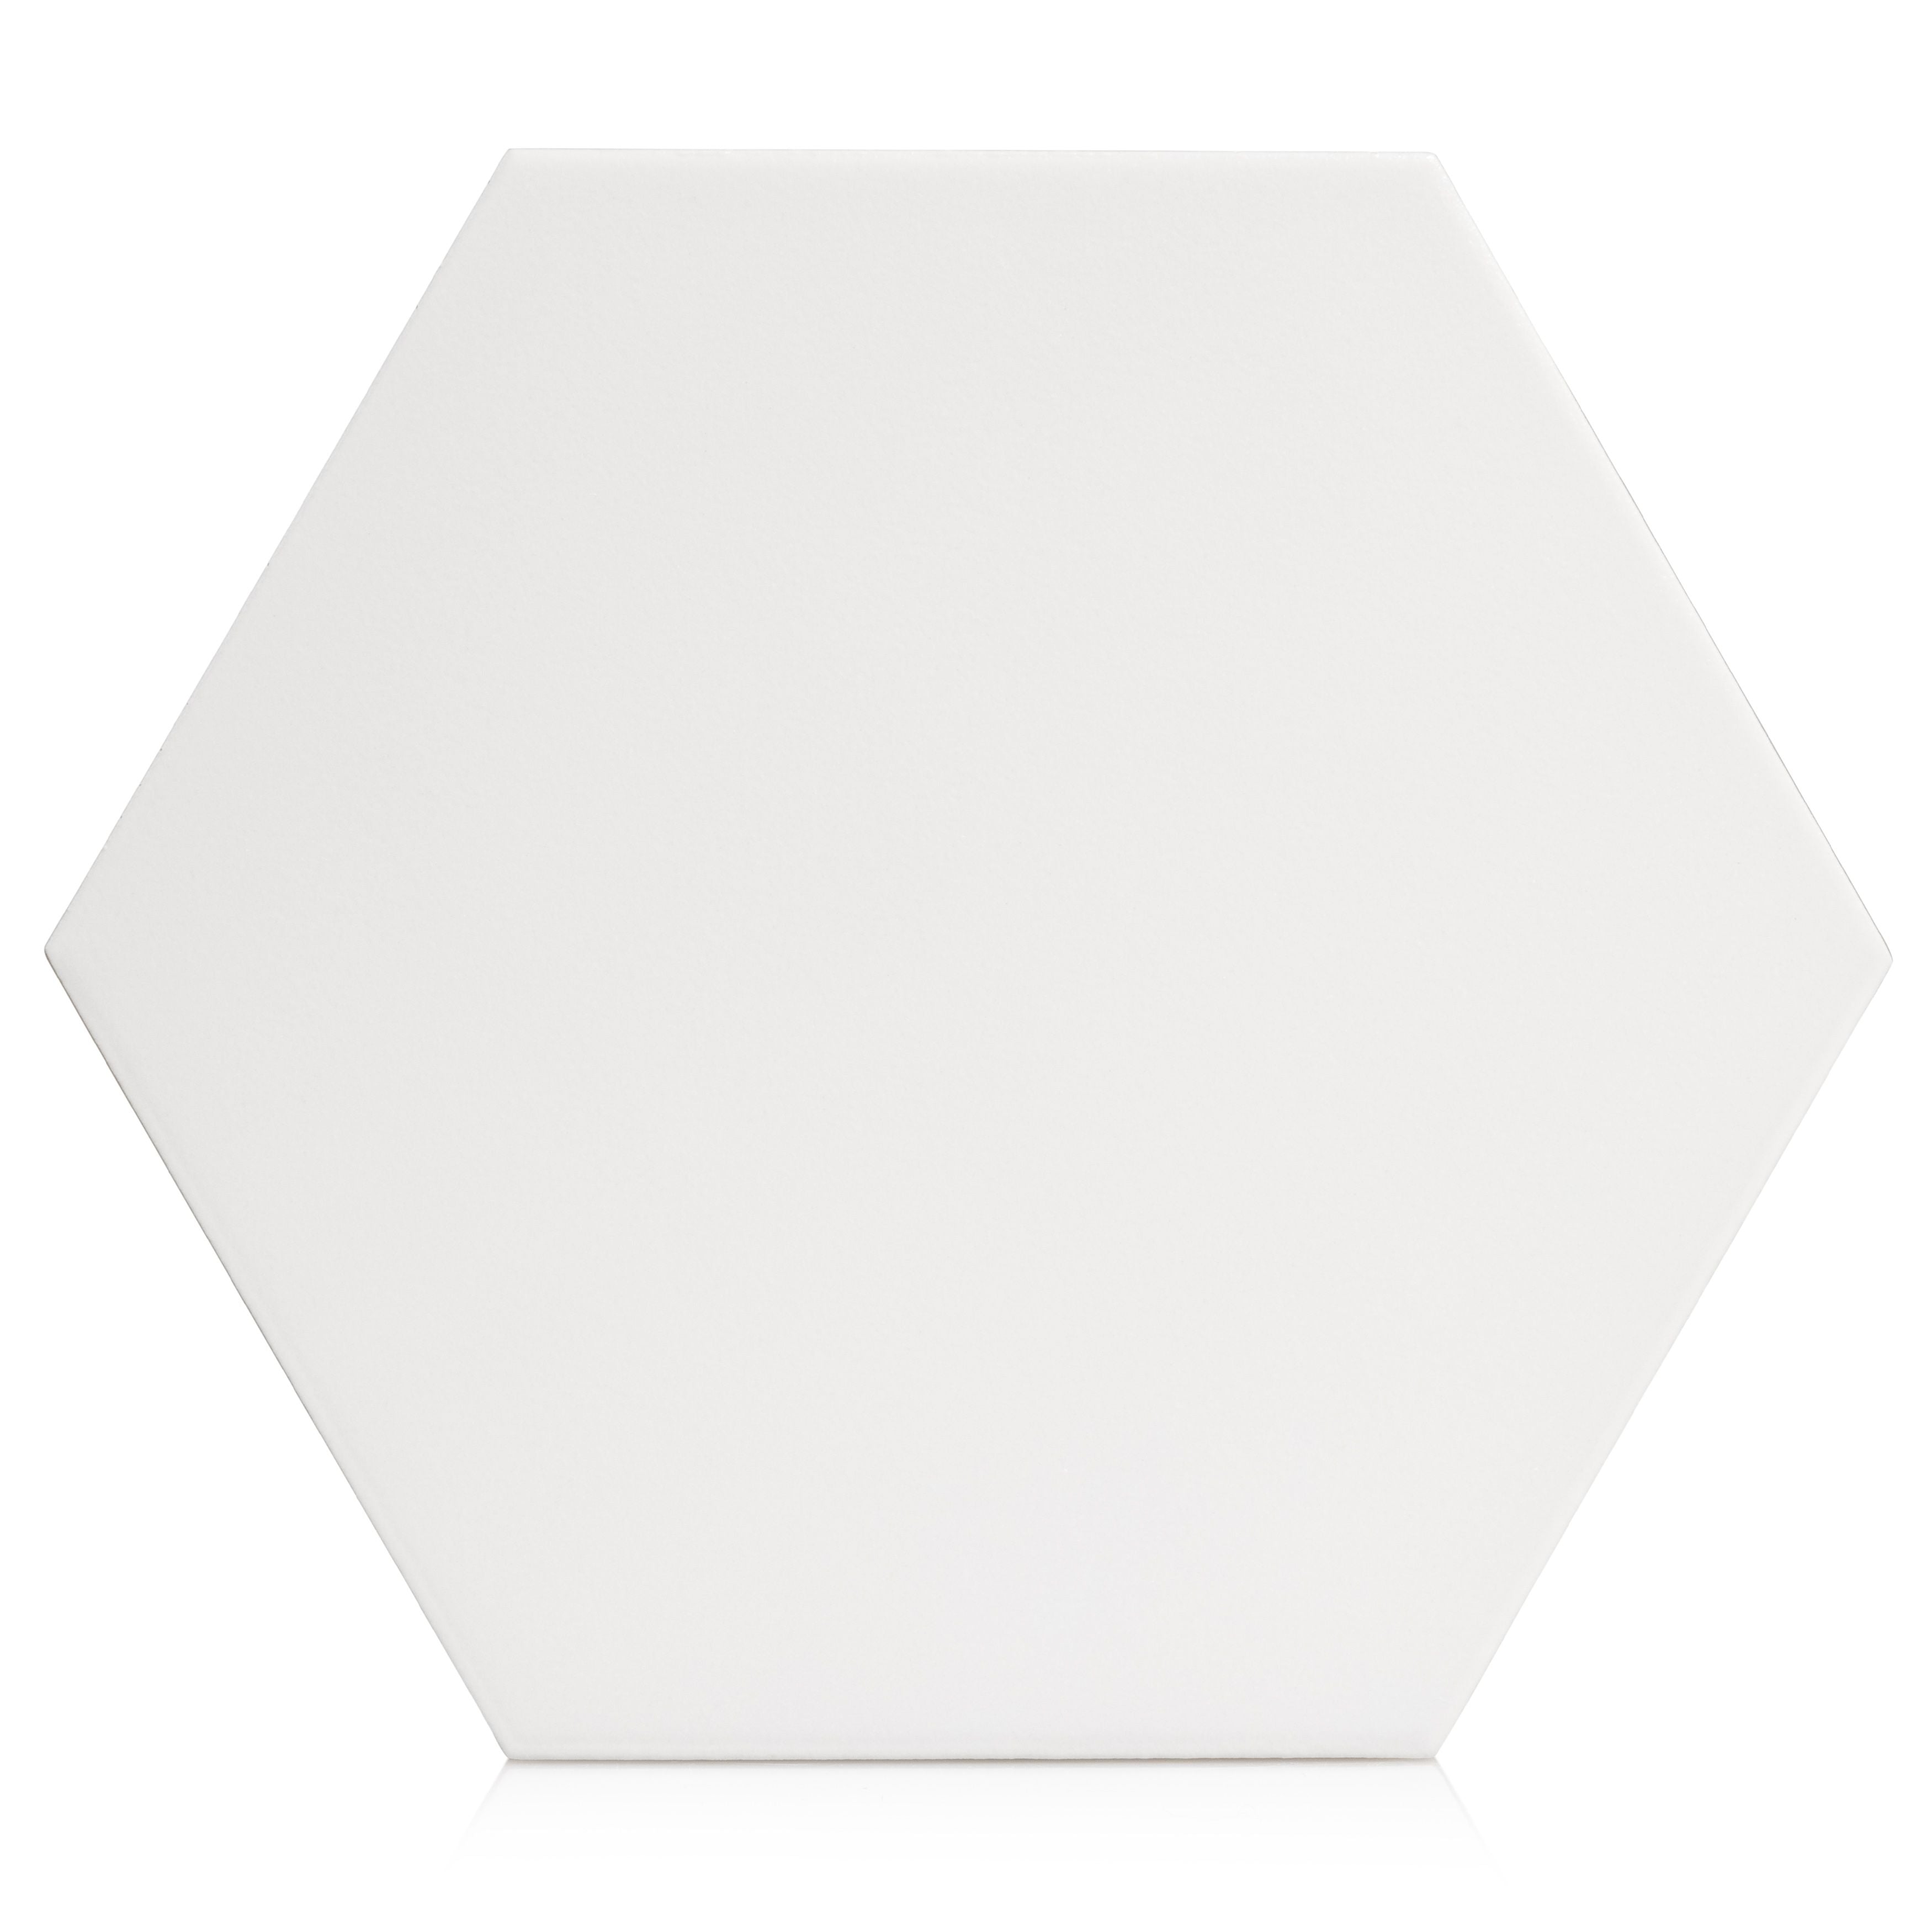 7.8x9 Tribeca Hexagon White porcelain tile - Industry Tile